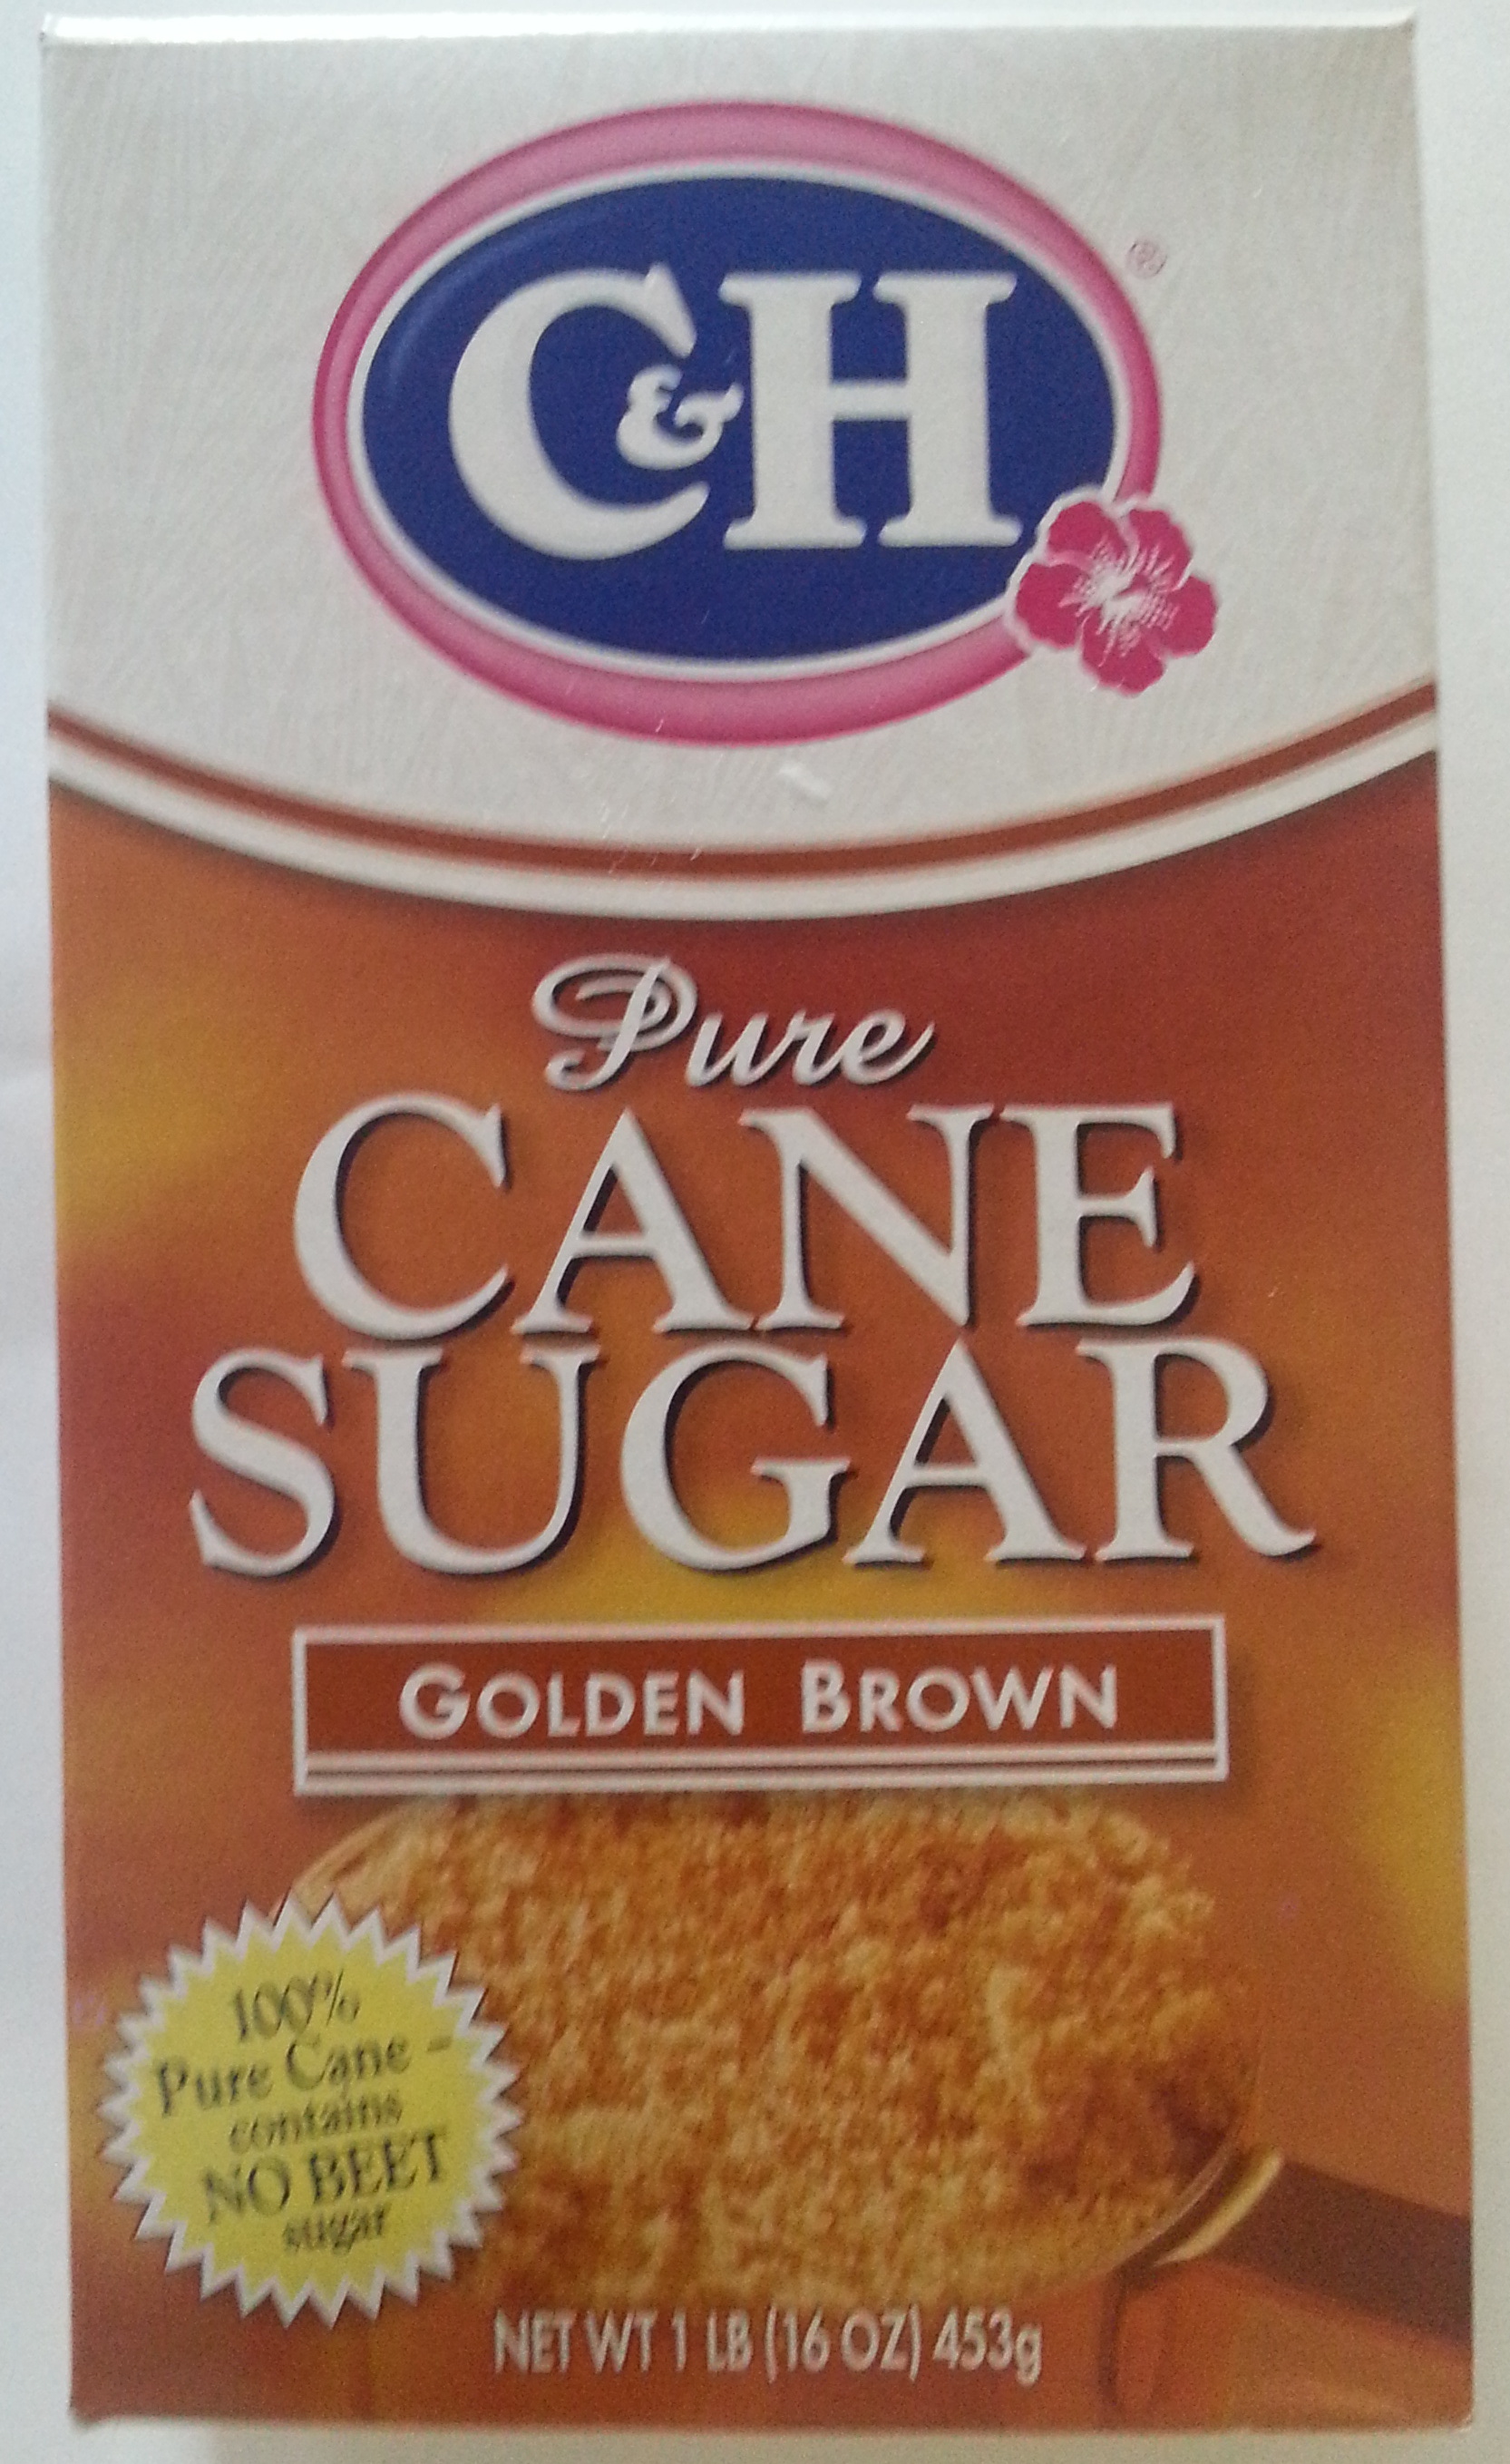 Pure Cane Sugar Golden Brown - Producto - en